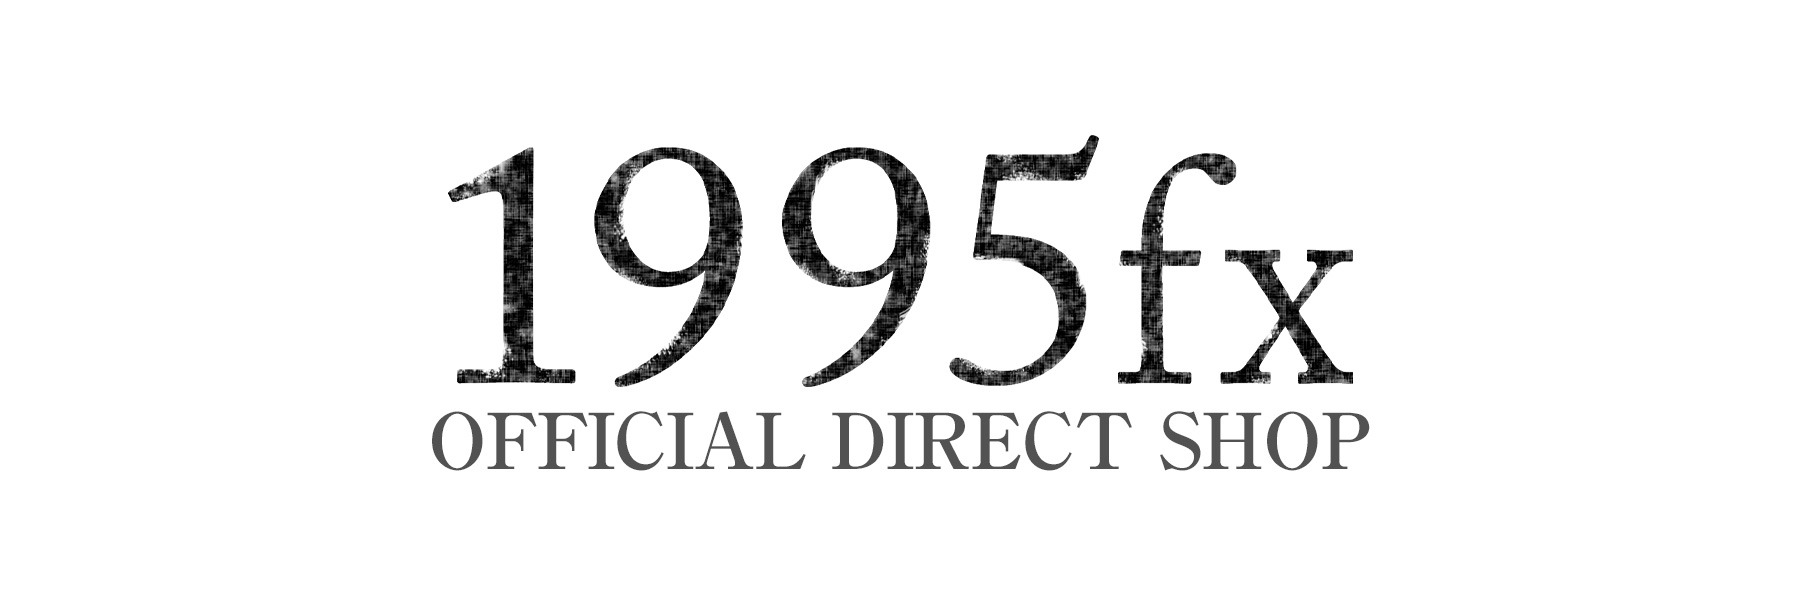 1995fx official direct shop